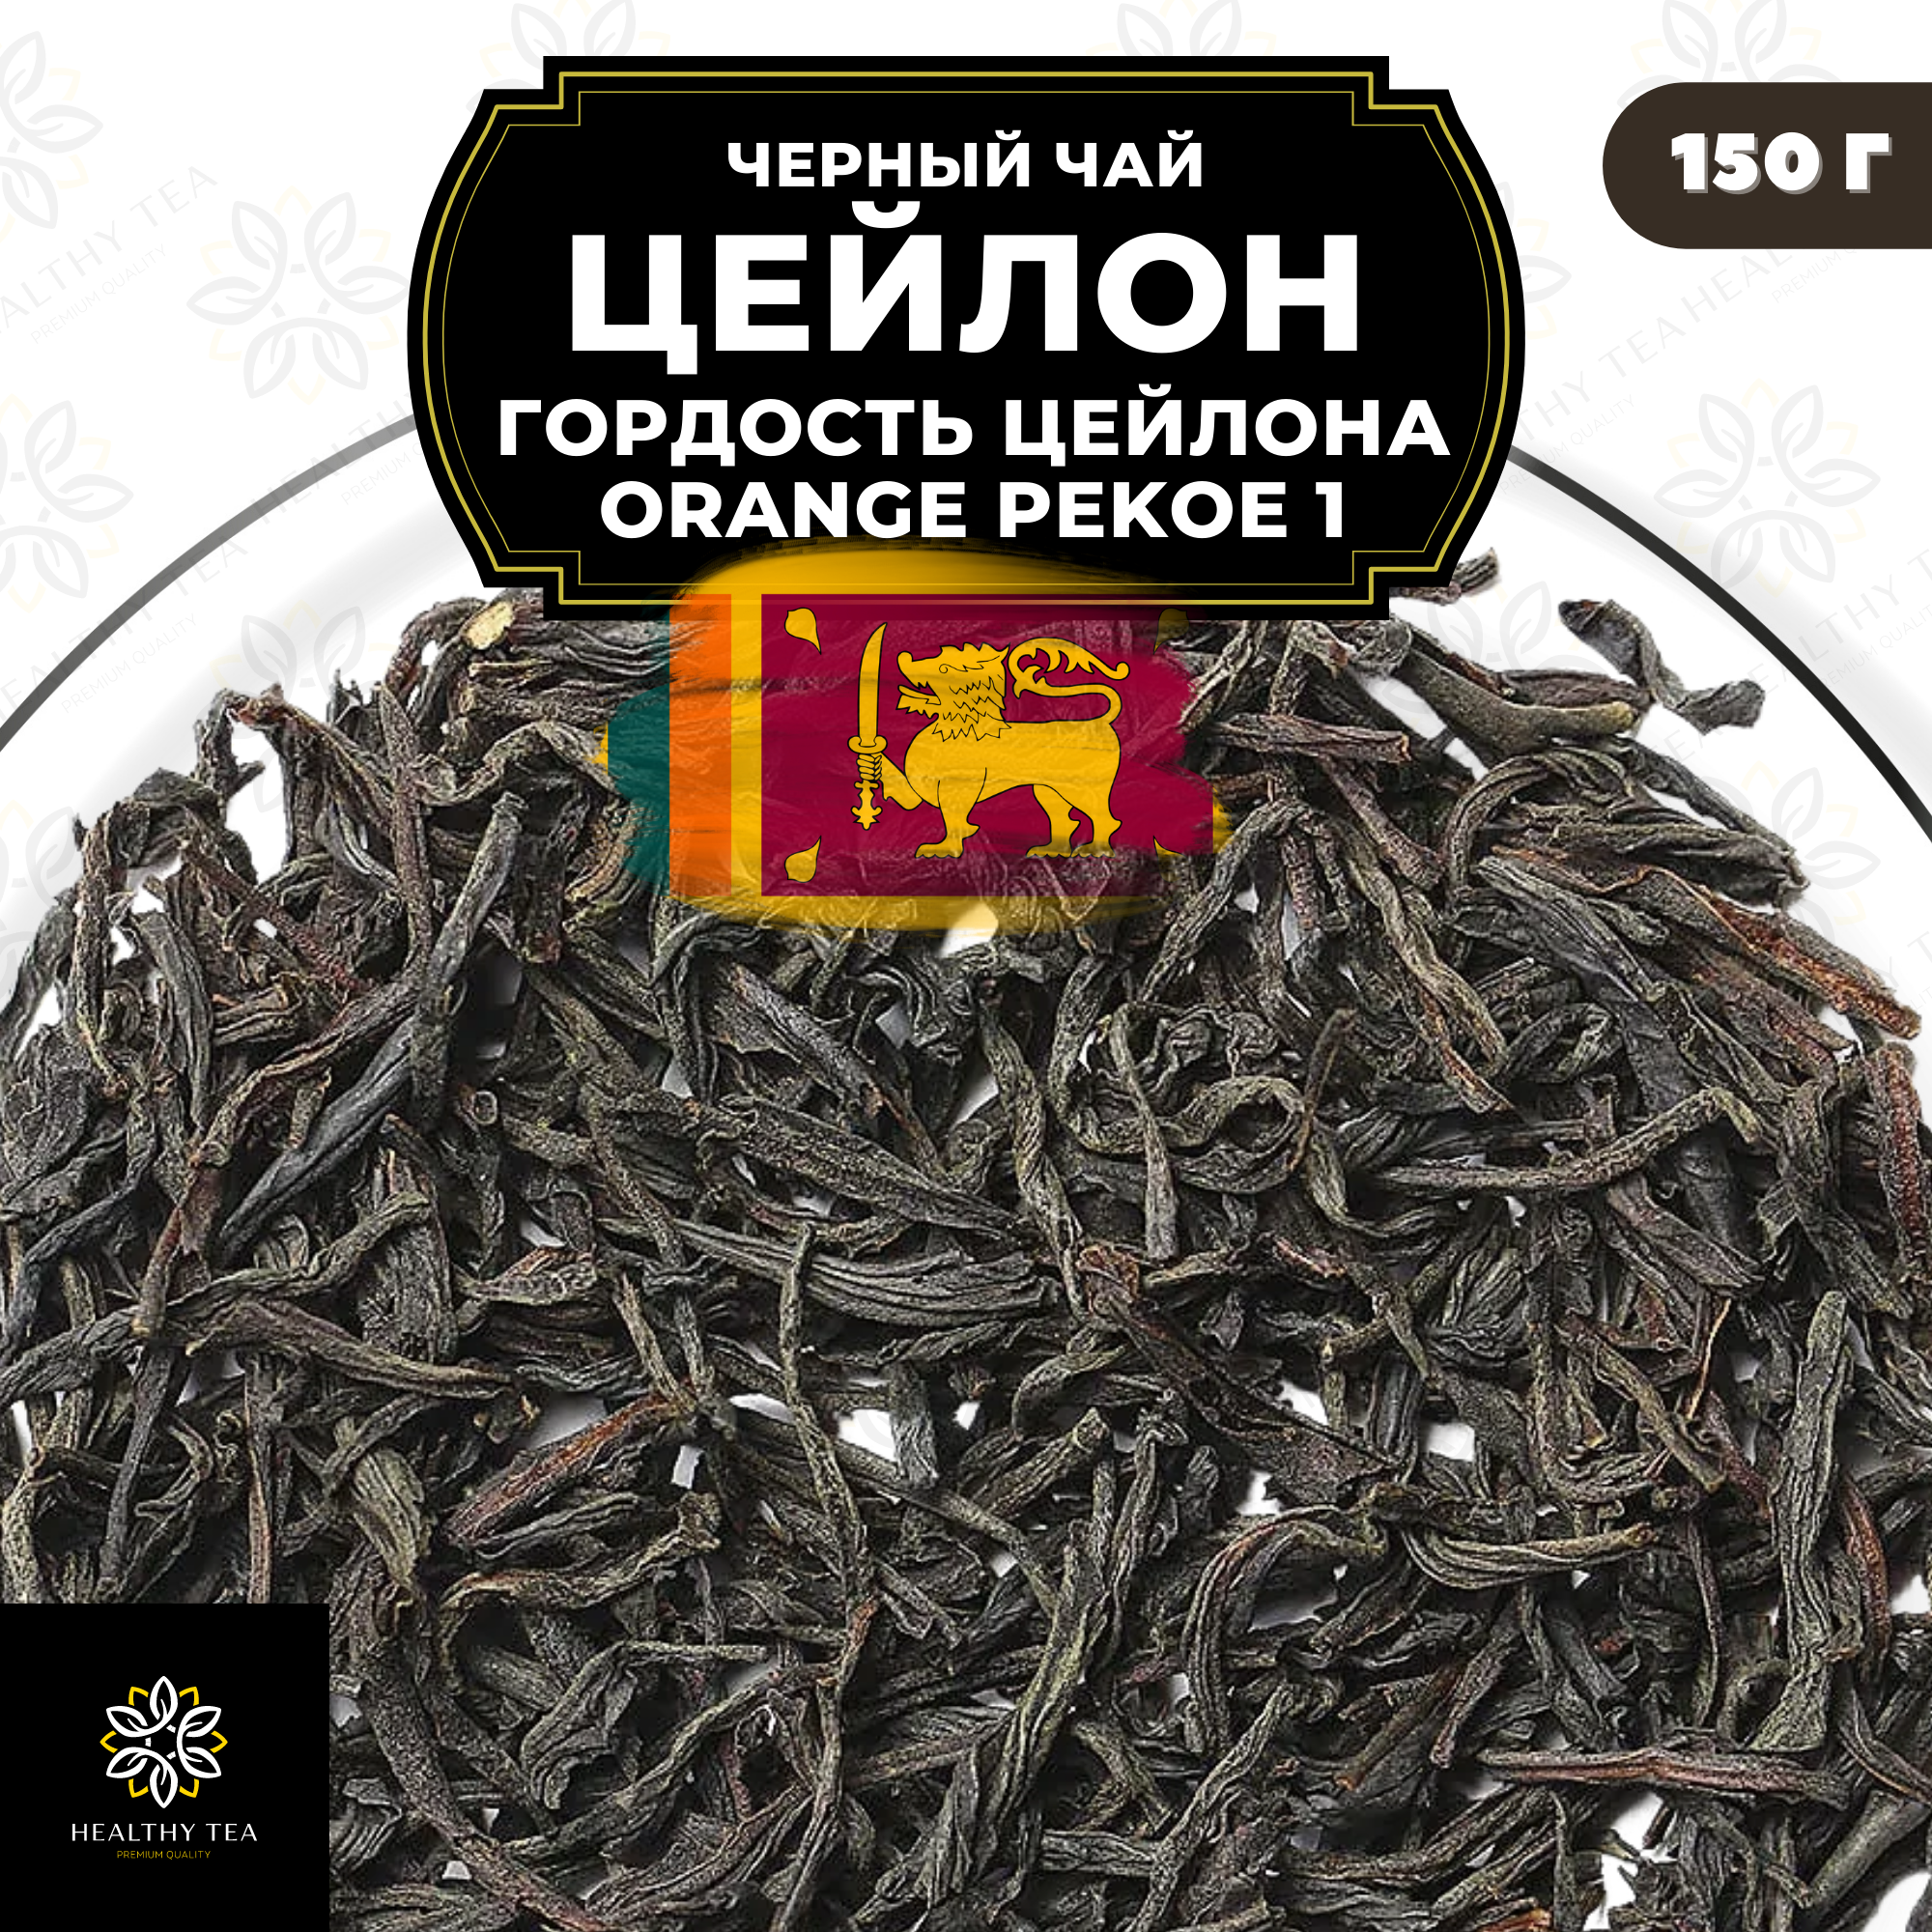 Черный листовой чай Цейлон Гордость Цейлона (ОР1) Полезный чай / HEALTHY TEA, 150 гр